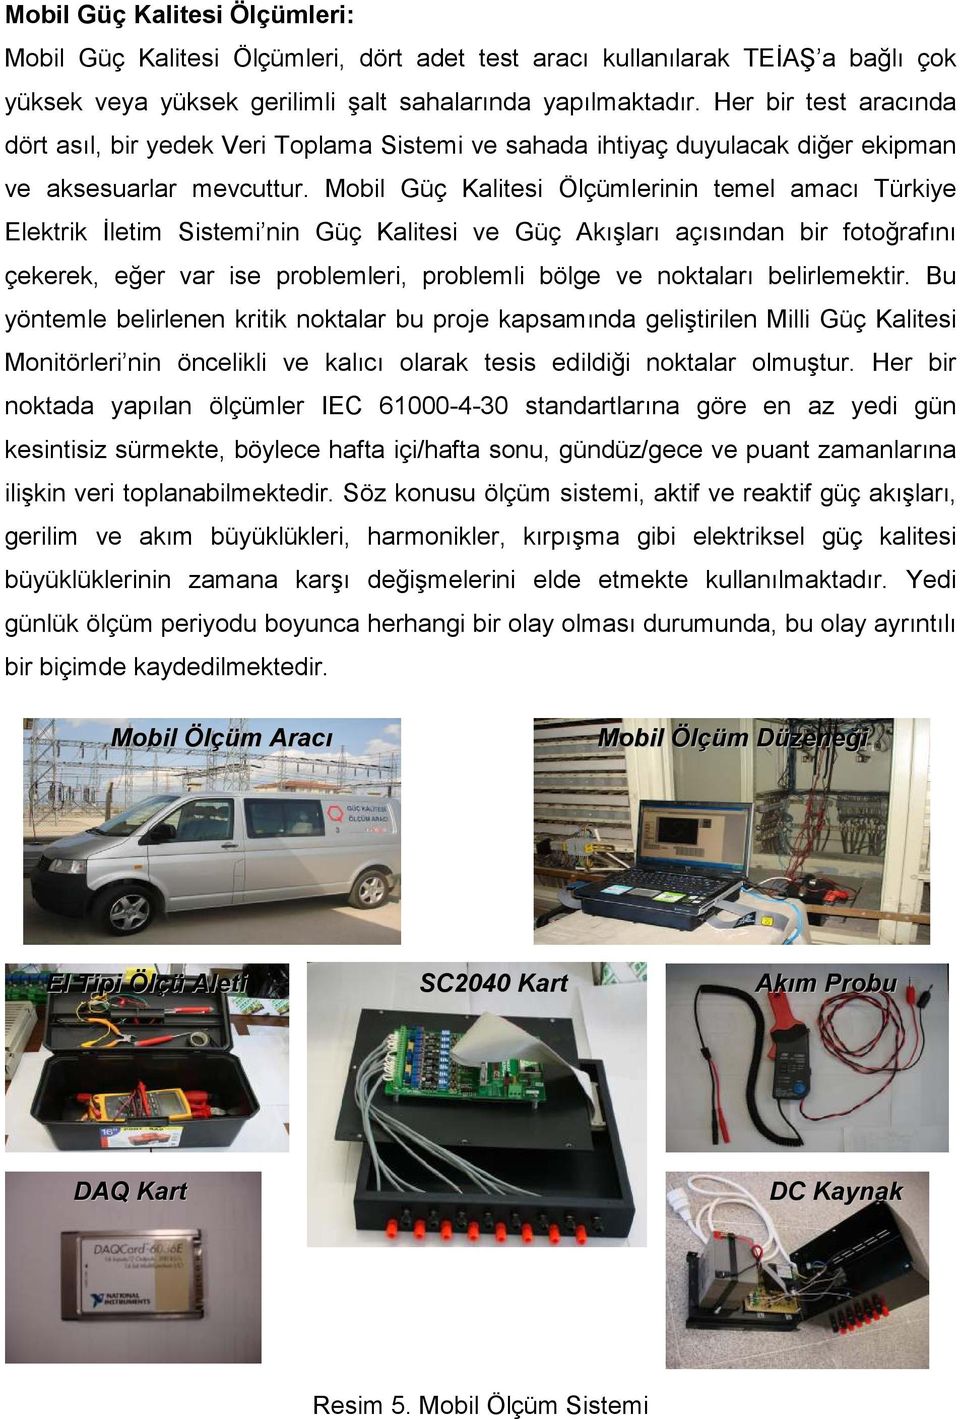 Mobil Güç Kalitesi Ölçümlerinin temel amacı Türkiye Elektrik Đletim Sistemi nin Güç Kalitesi ve Güç Akışları açısından bir fotoğrafını çekerek, eğer var ise problemleri, problemli bölge ve noktaları